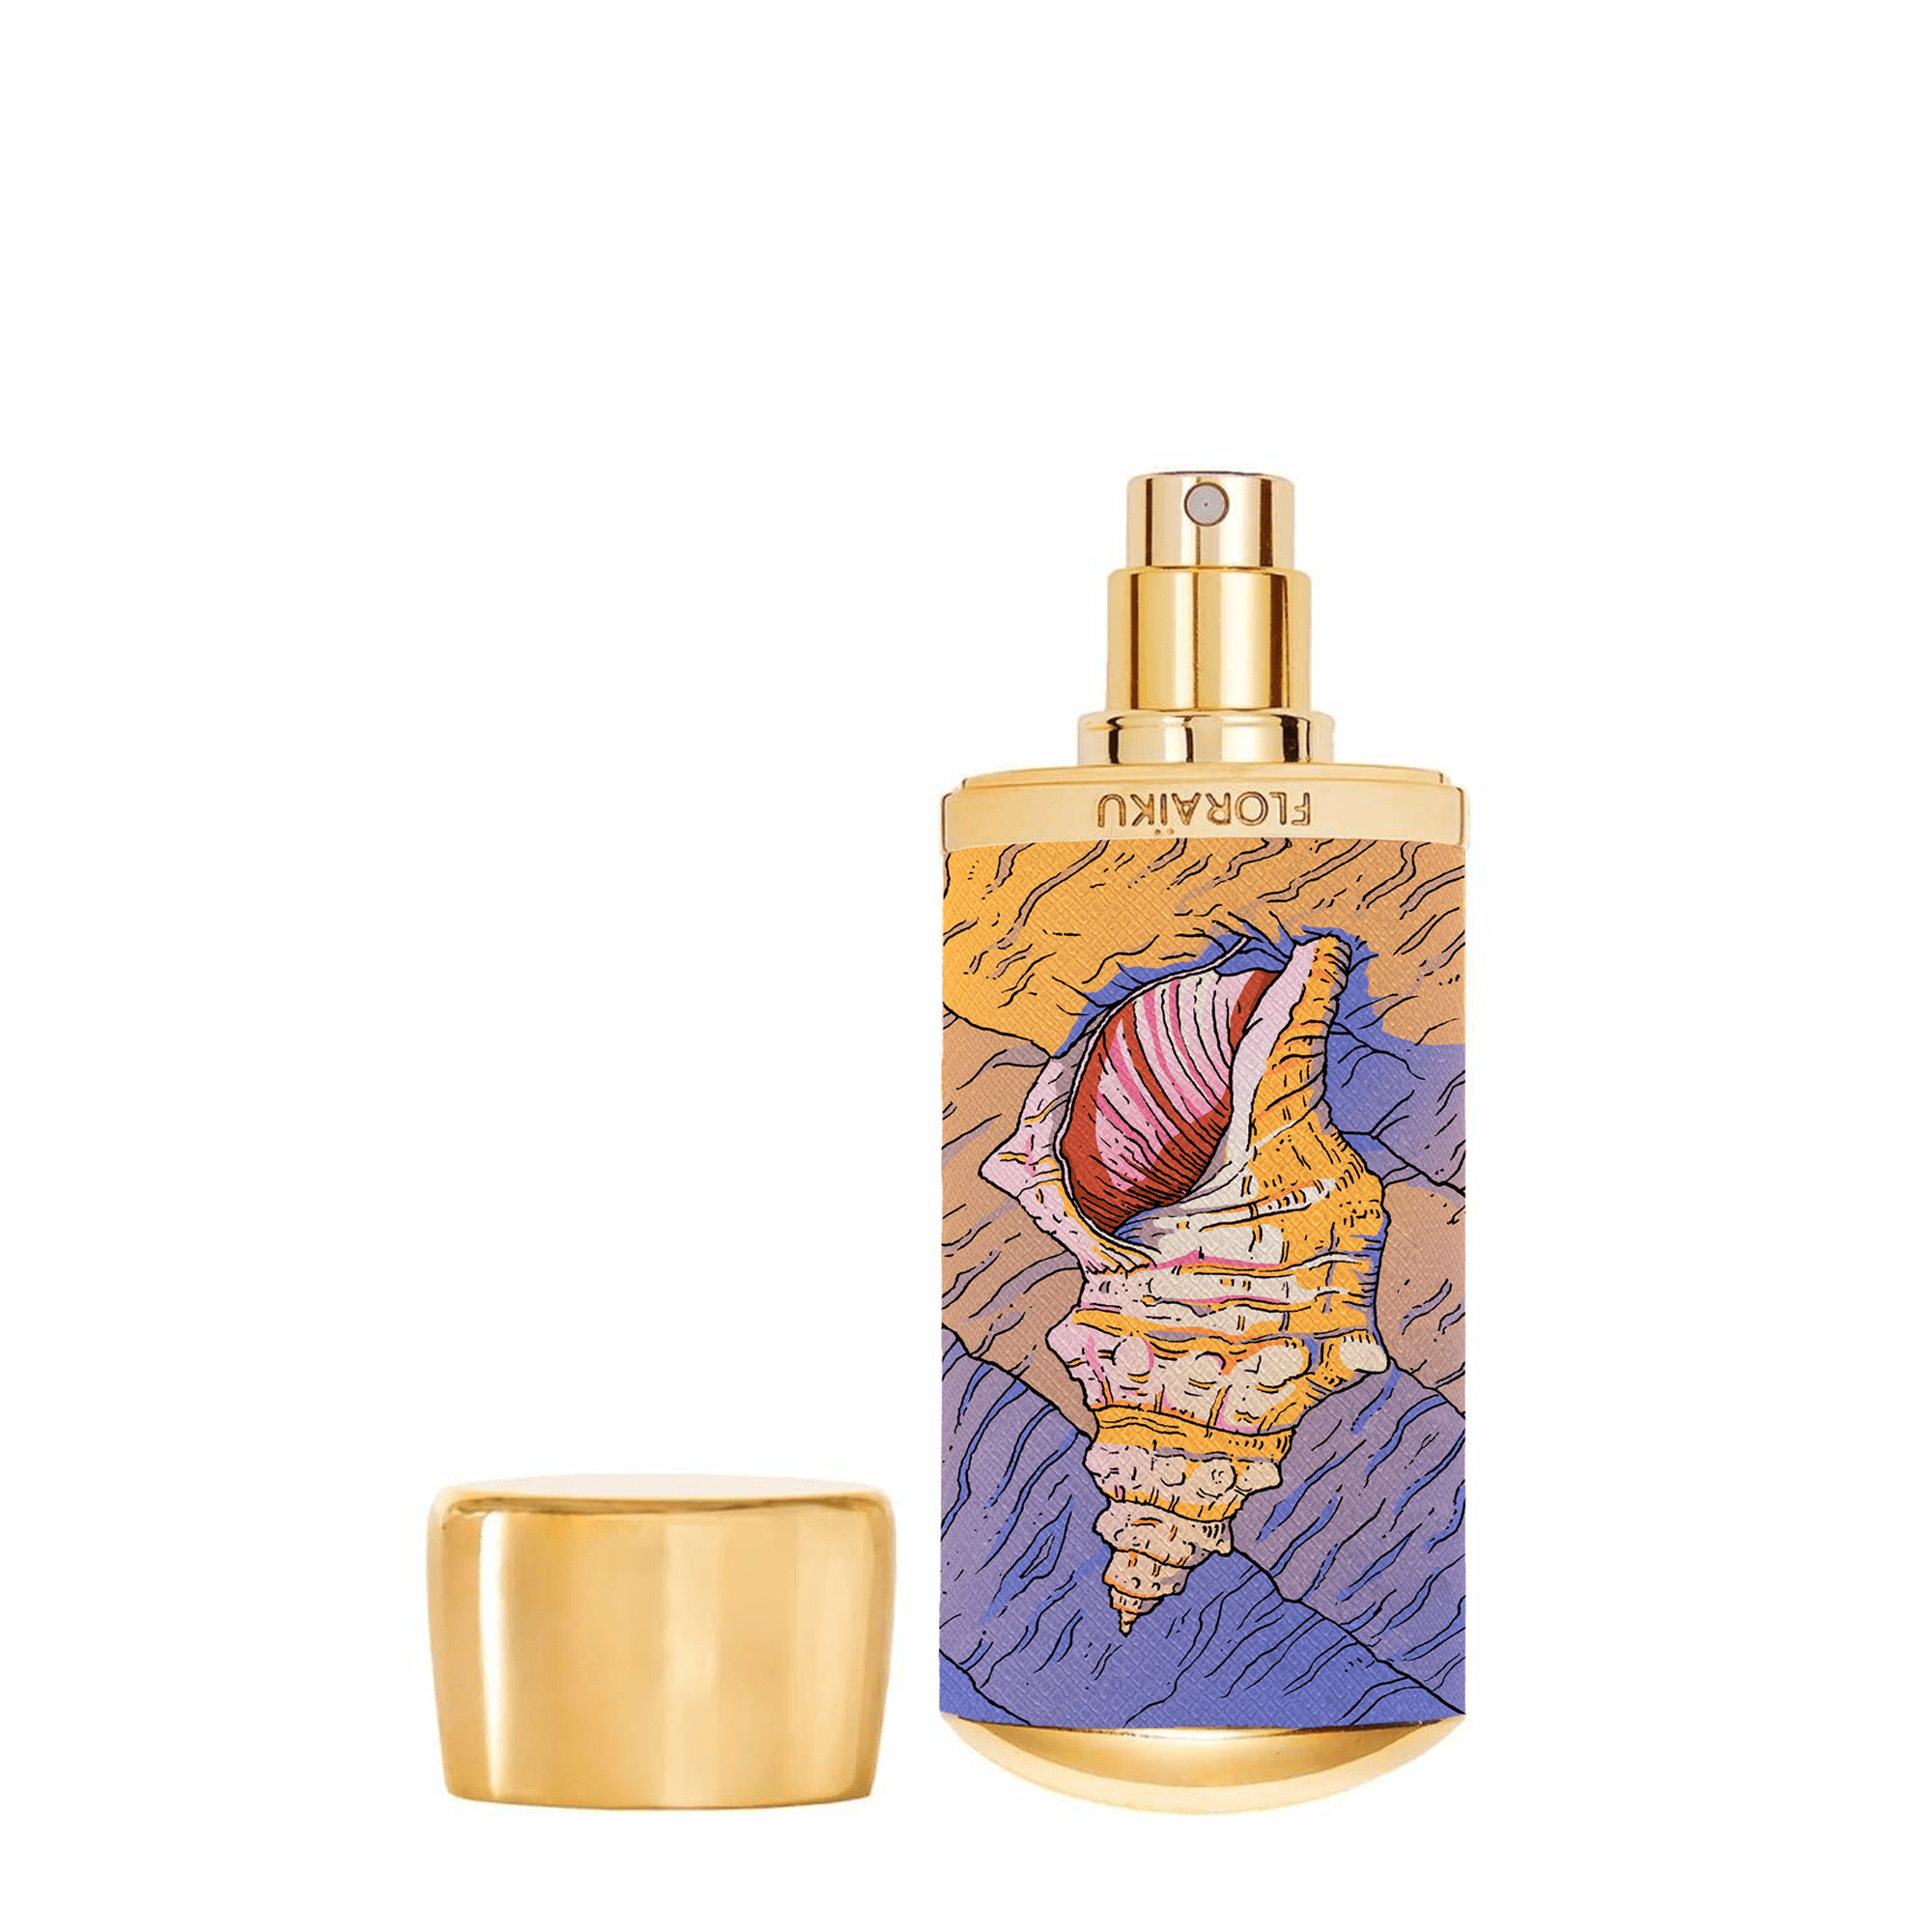 Sand & Skin - Forbidden Incense Kodo de FLORAÏKU Eau de Parfum